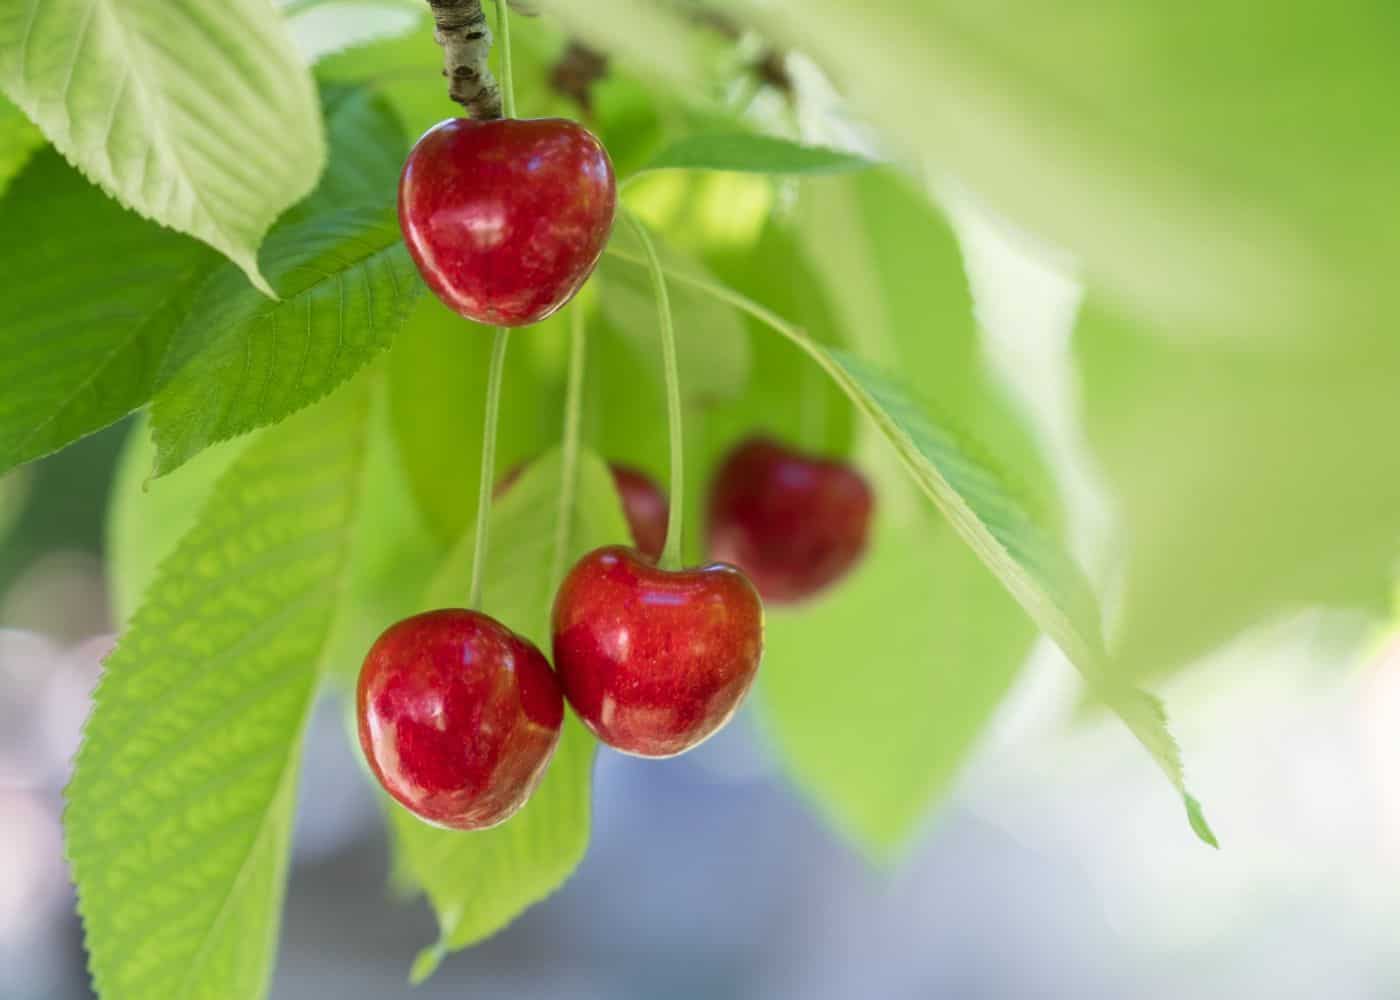 Cherry tree - mature